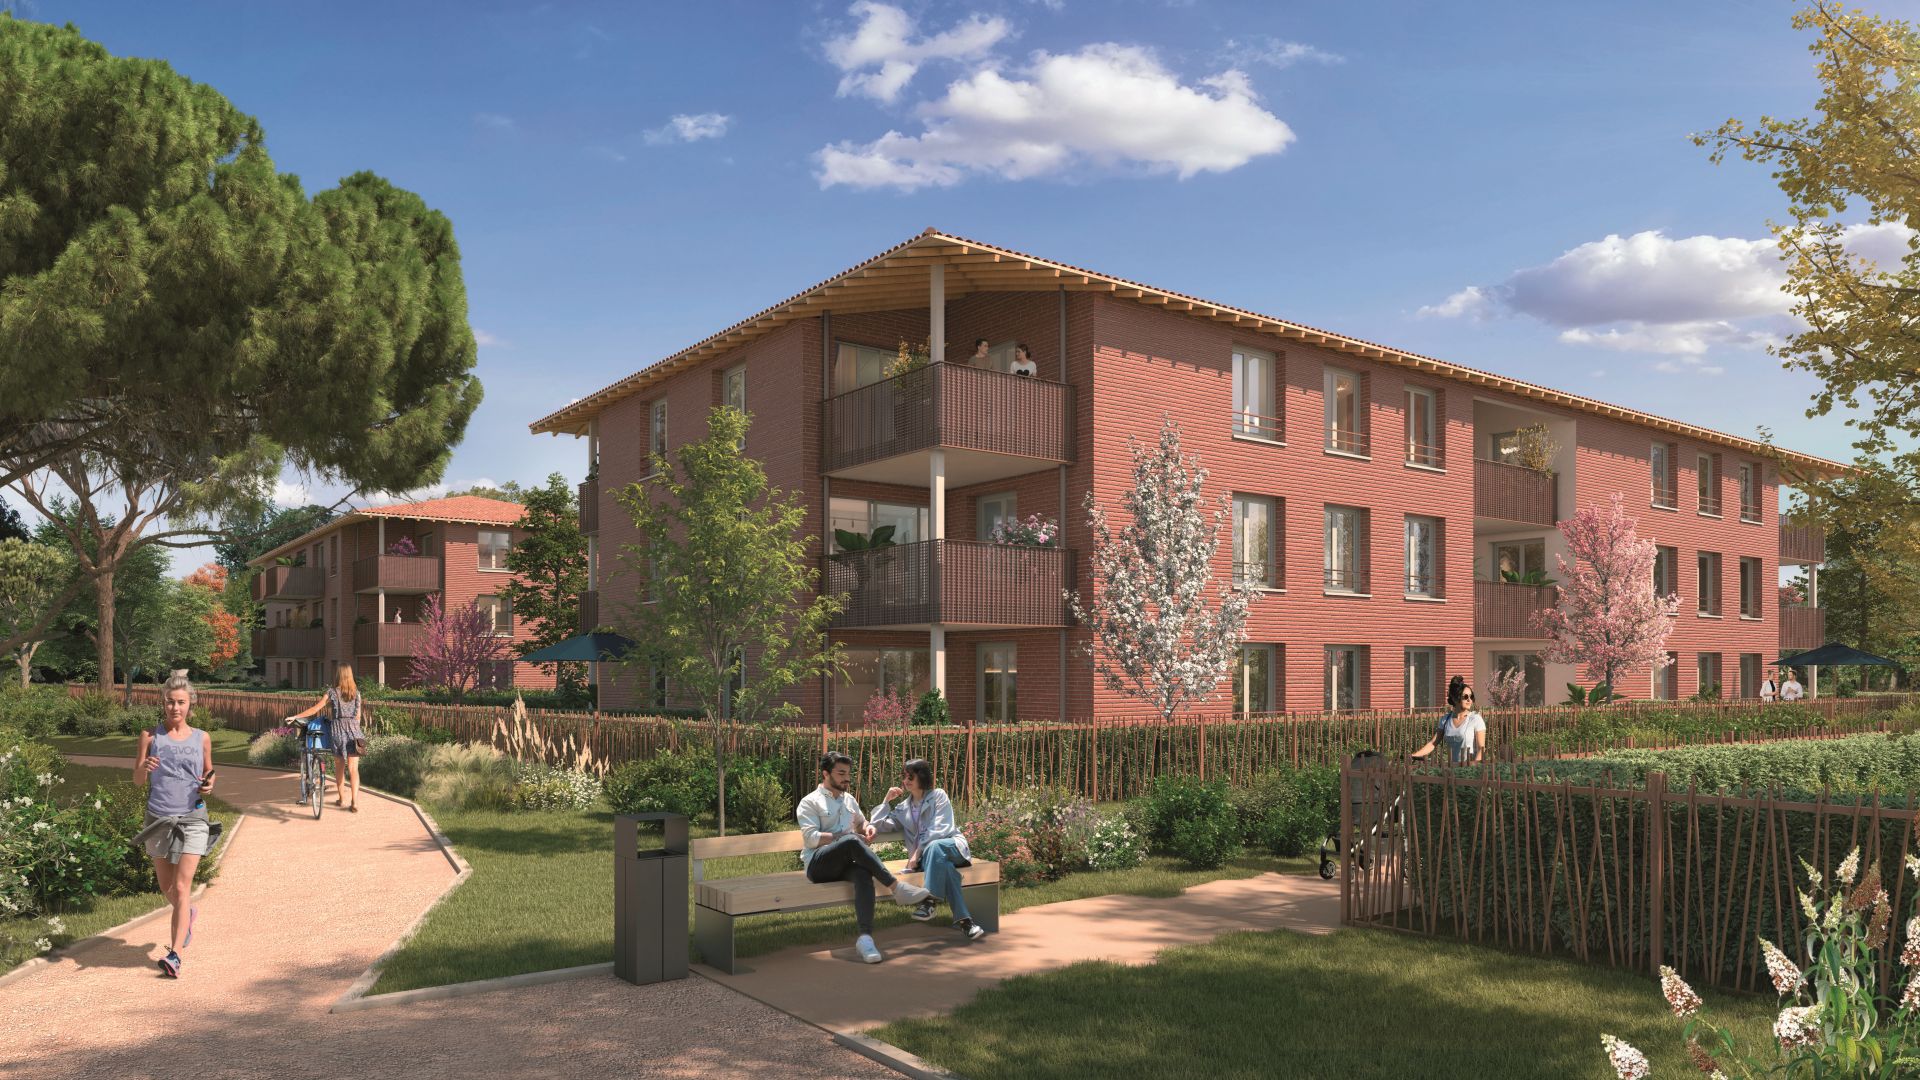 Greencity immobilier - achat appartements neufs du T1Bis au T4 - Résidence Confluences 1 - Labarthe-sur-Lèze - 31860